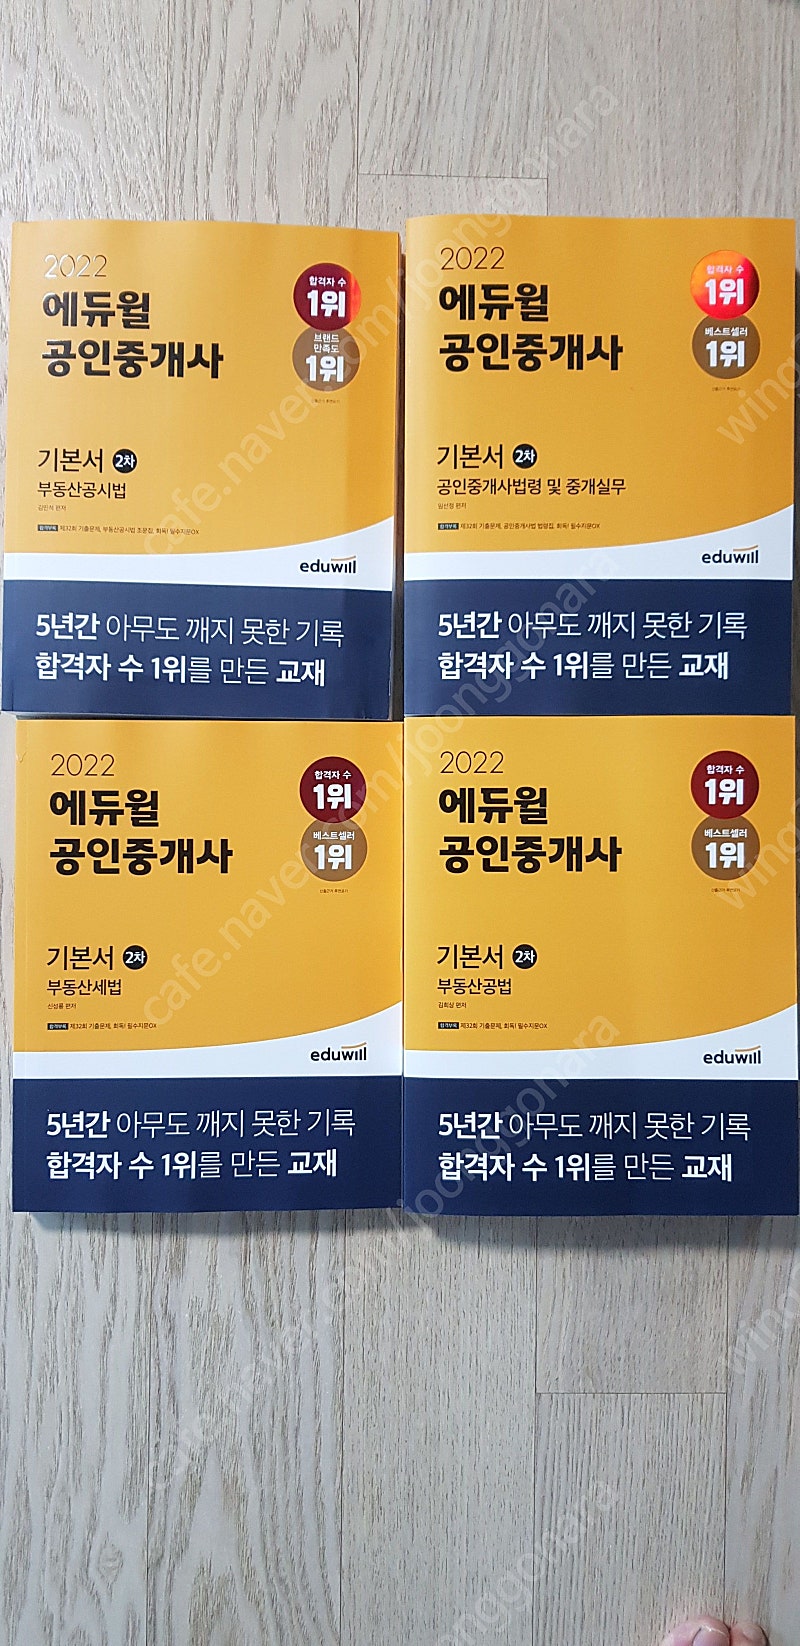 [팝니다]부산_ 2022년 에듀윌 공인중개사 2차 기본서 세트 4권 팝니다. (사진첨부)